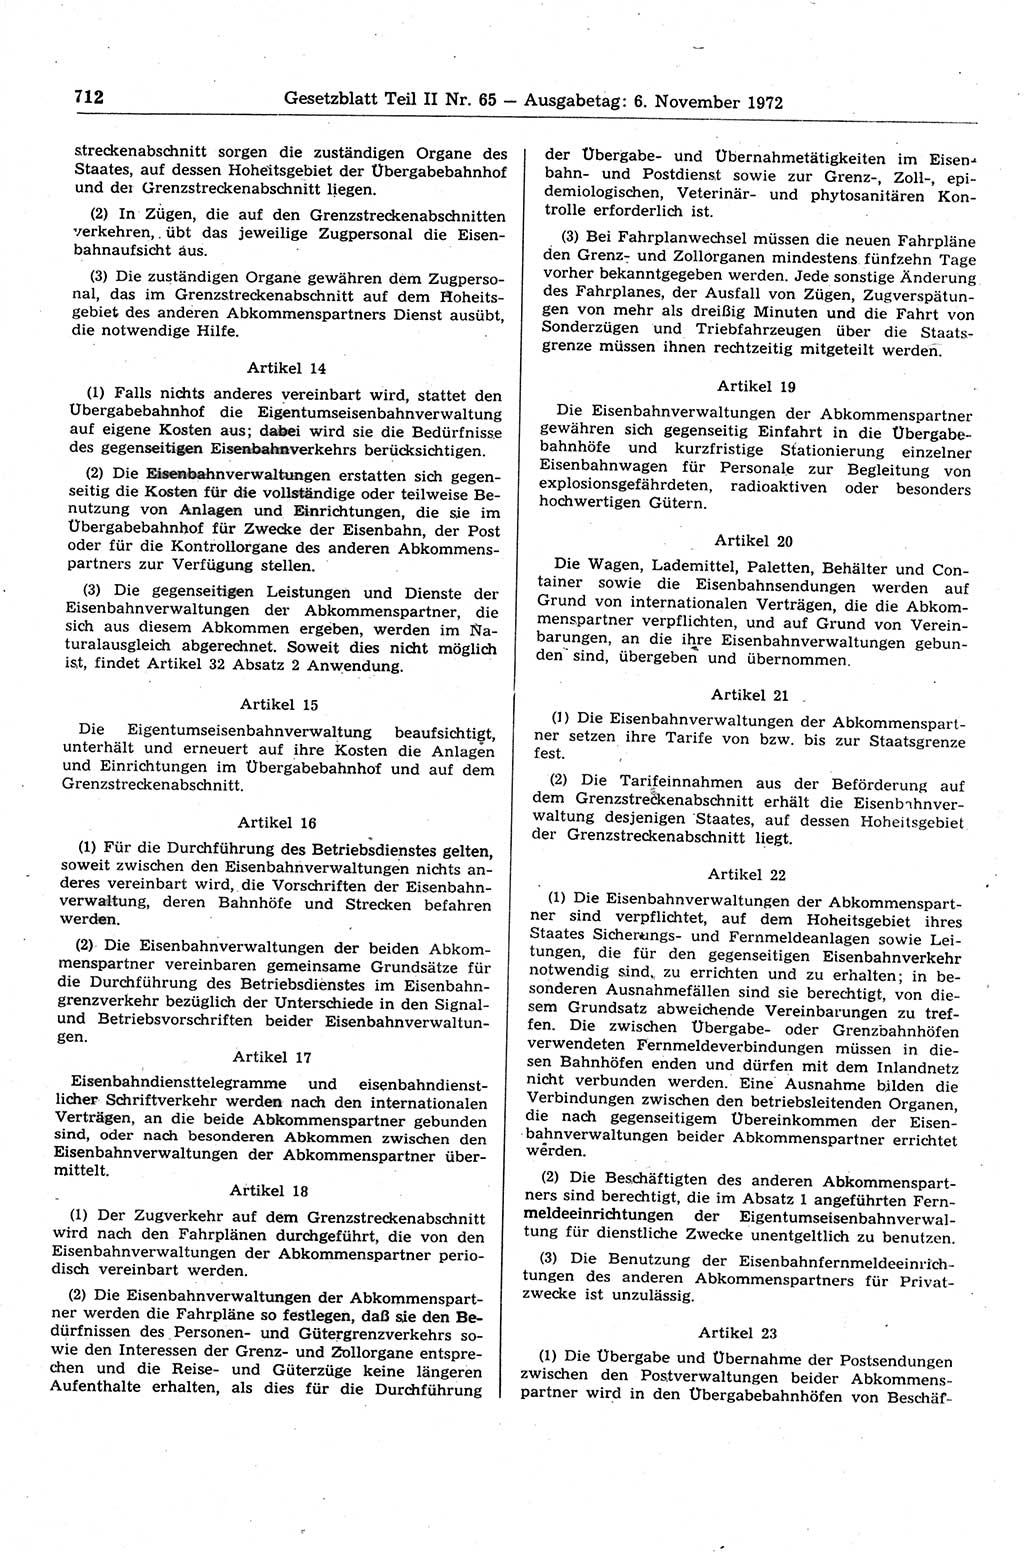 Gesetzblatt (GBl.) der Deutschen Demokratischen Republik (DDR) Teil ⅠⅠ 1972, Seite 712 (GBl. DDR ⅠⅠ 1972, S. 712)